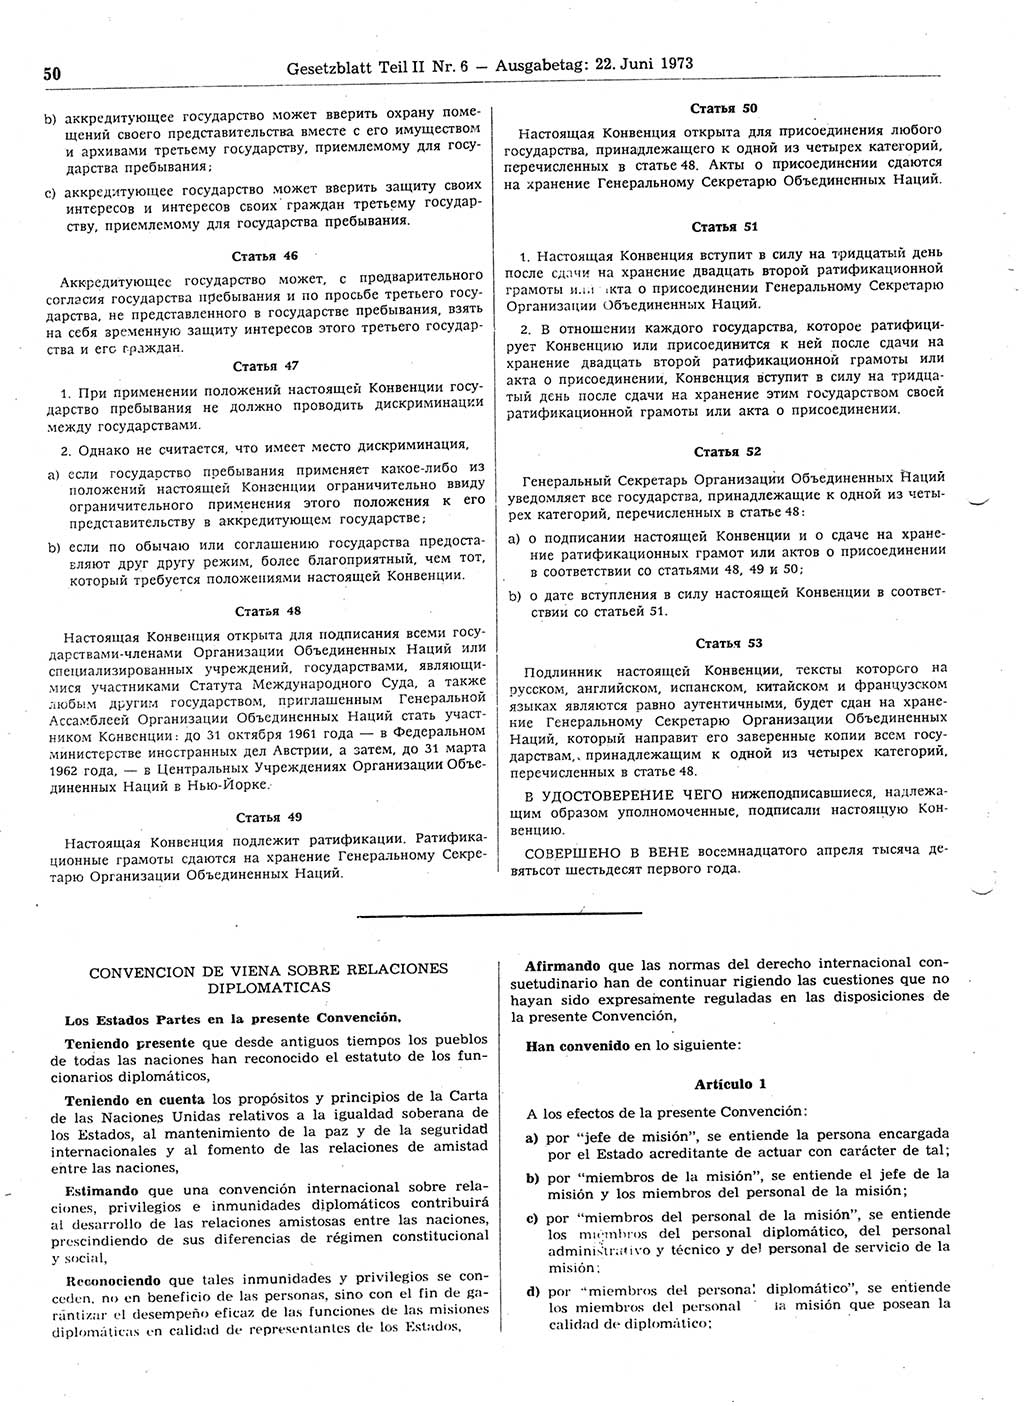 Gesetzblatt (GBl.) der Deutschen Demokratischen Republik (DDR) Teil ⅠⅠ 1973, Seite 50 (GBl. DDR ⅠⅠ 1973, S. 50)